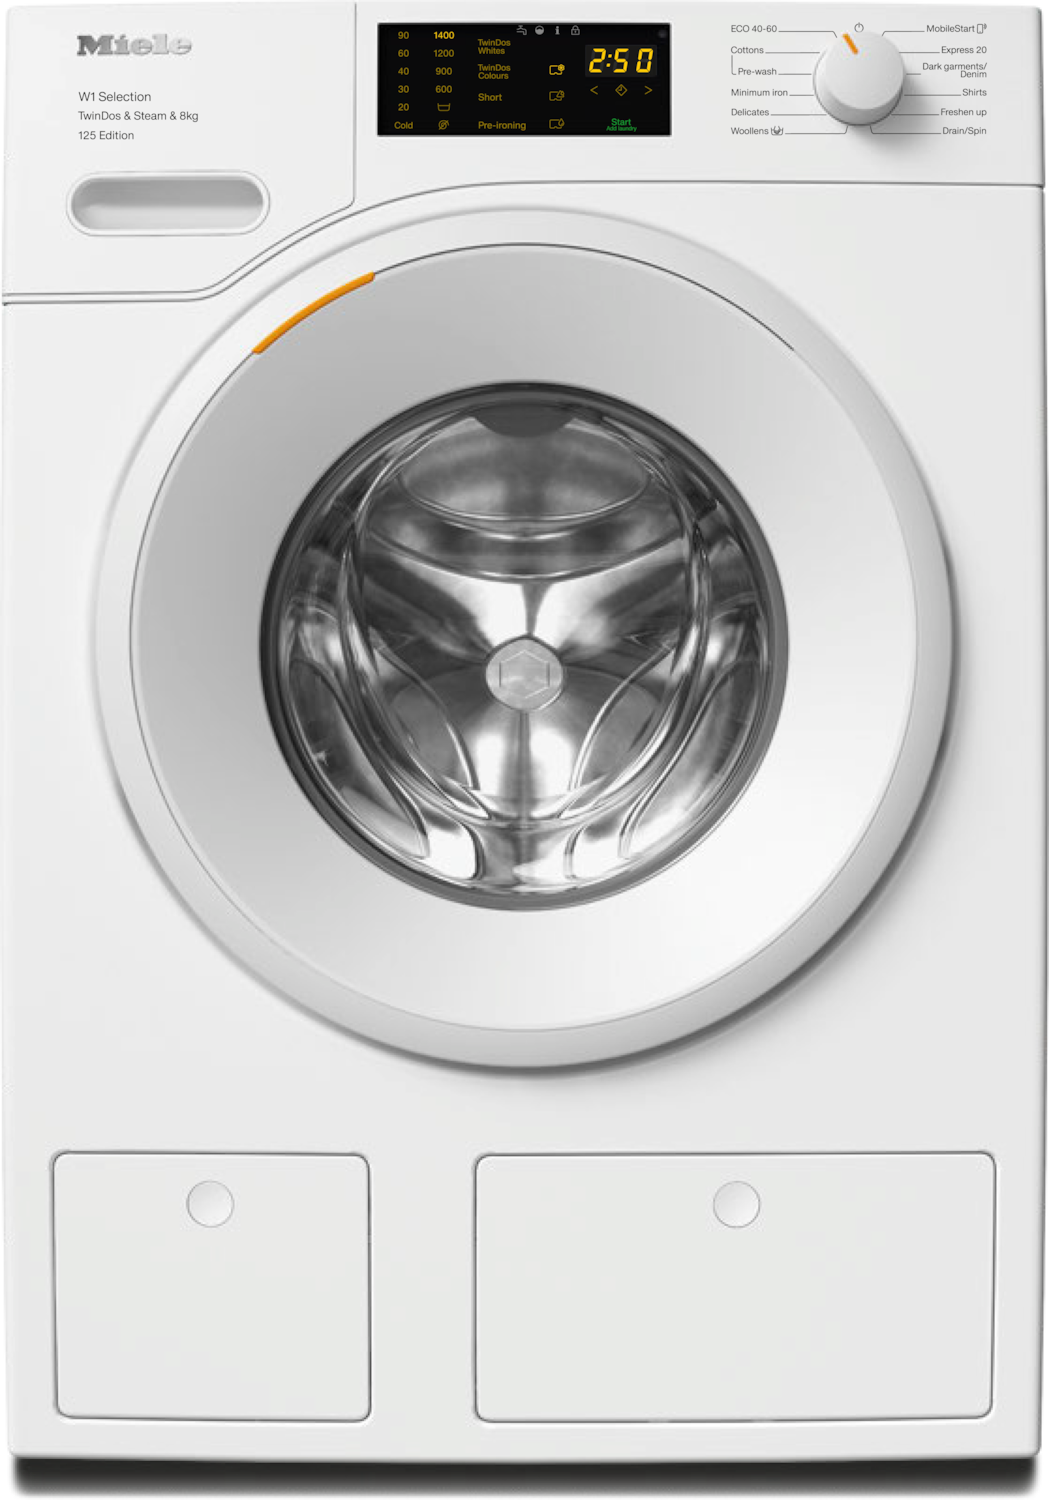 8kg TwinDos skalbimo mašina su SteamCare funkcija ir WiFi (WSB683 WCS 125 Edition) product photo